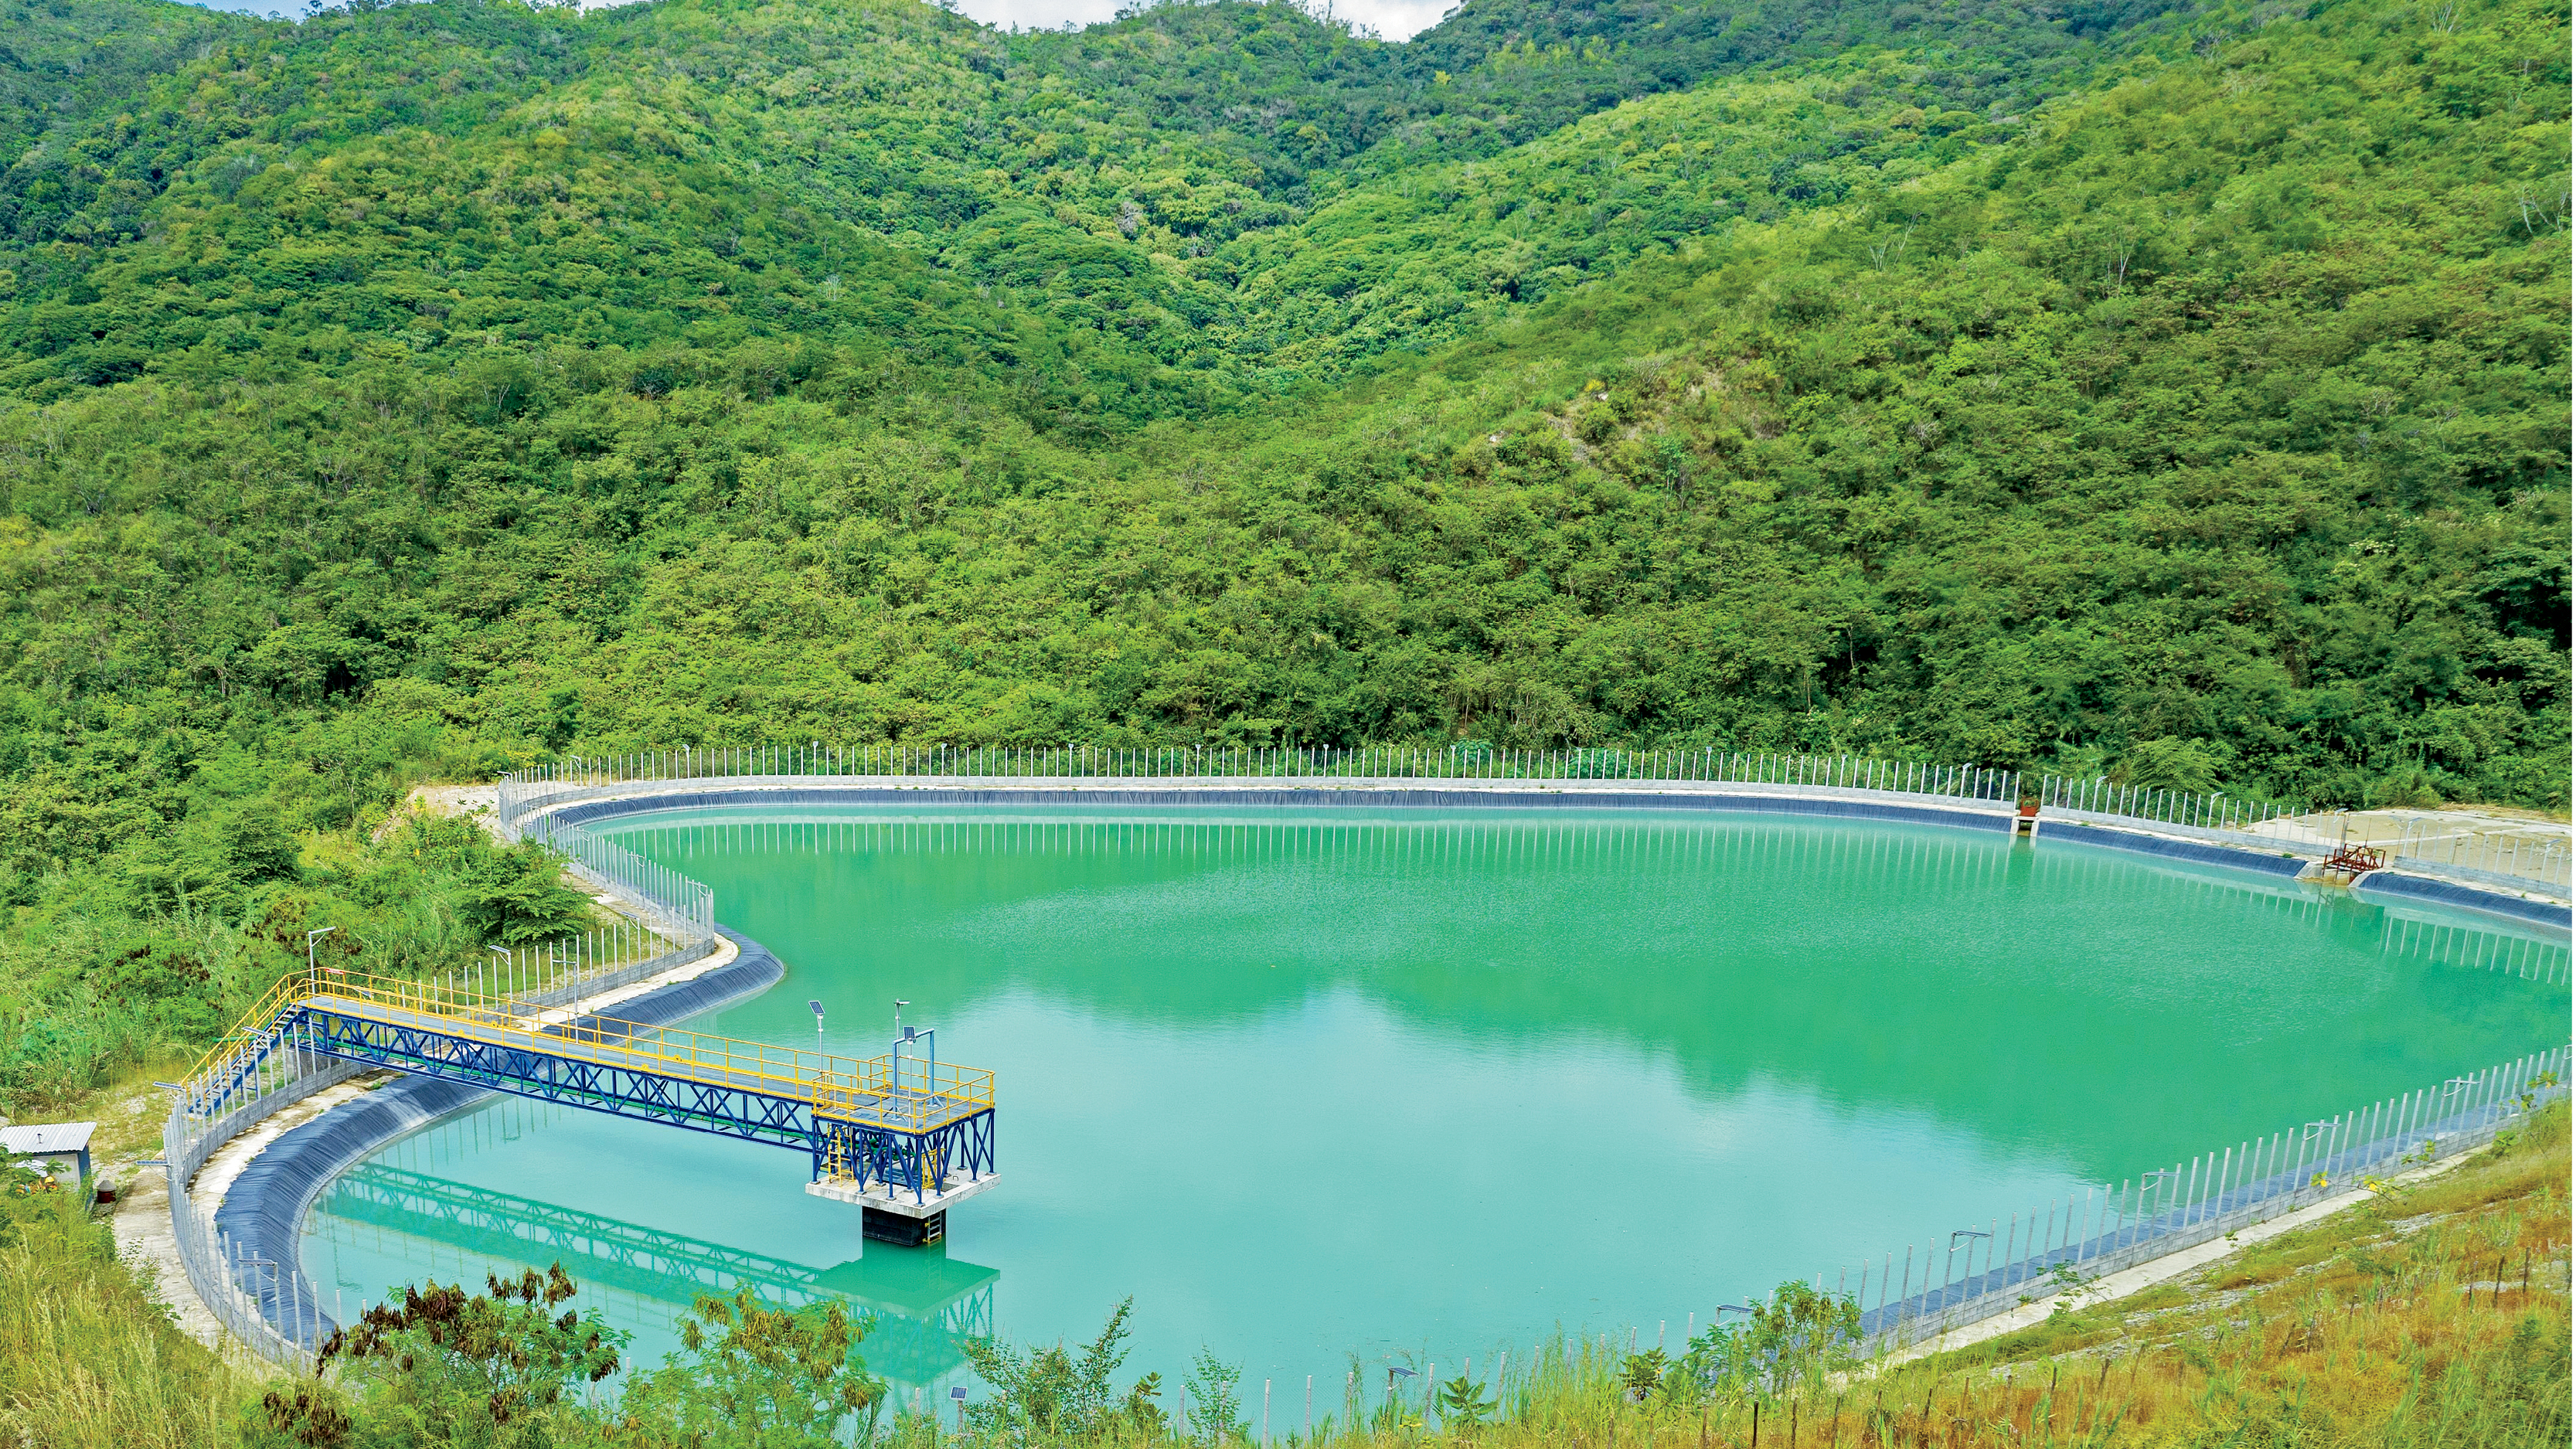 Progreso cuenta con un reservorio con una capacidad combinada
de 266,000 metros cúbicos de recolección de agua de lluvia.